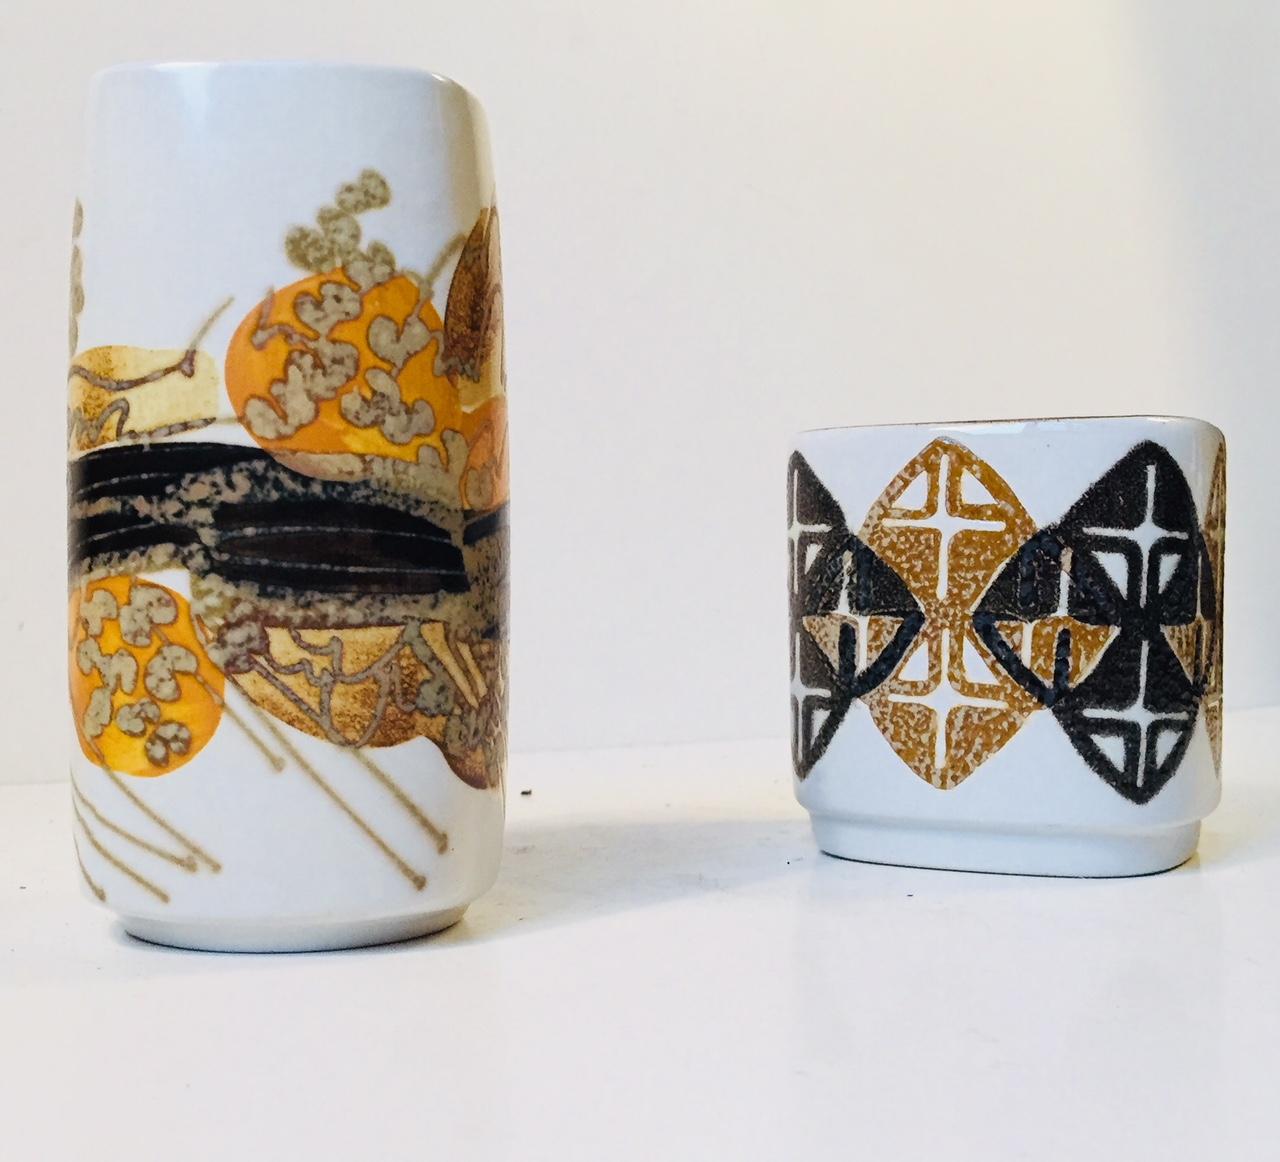 Fayence-Vasen-Set mit abstrakt-modernistischem Dekor in kontrastierenden Glasuren. Beide wurden von der dänischen Keramikerin Ellen Malmer (EM) entworfen und in den 1970er Jahren von Royal Copenhagen hergestellt. Beide sind vollständig signiert,